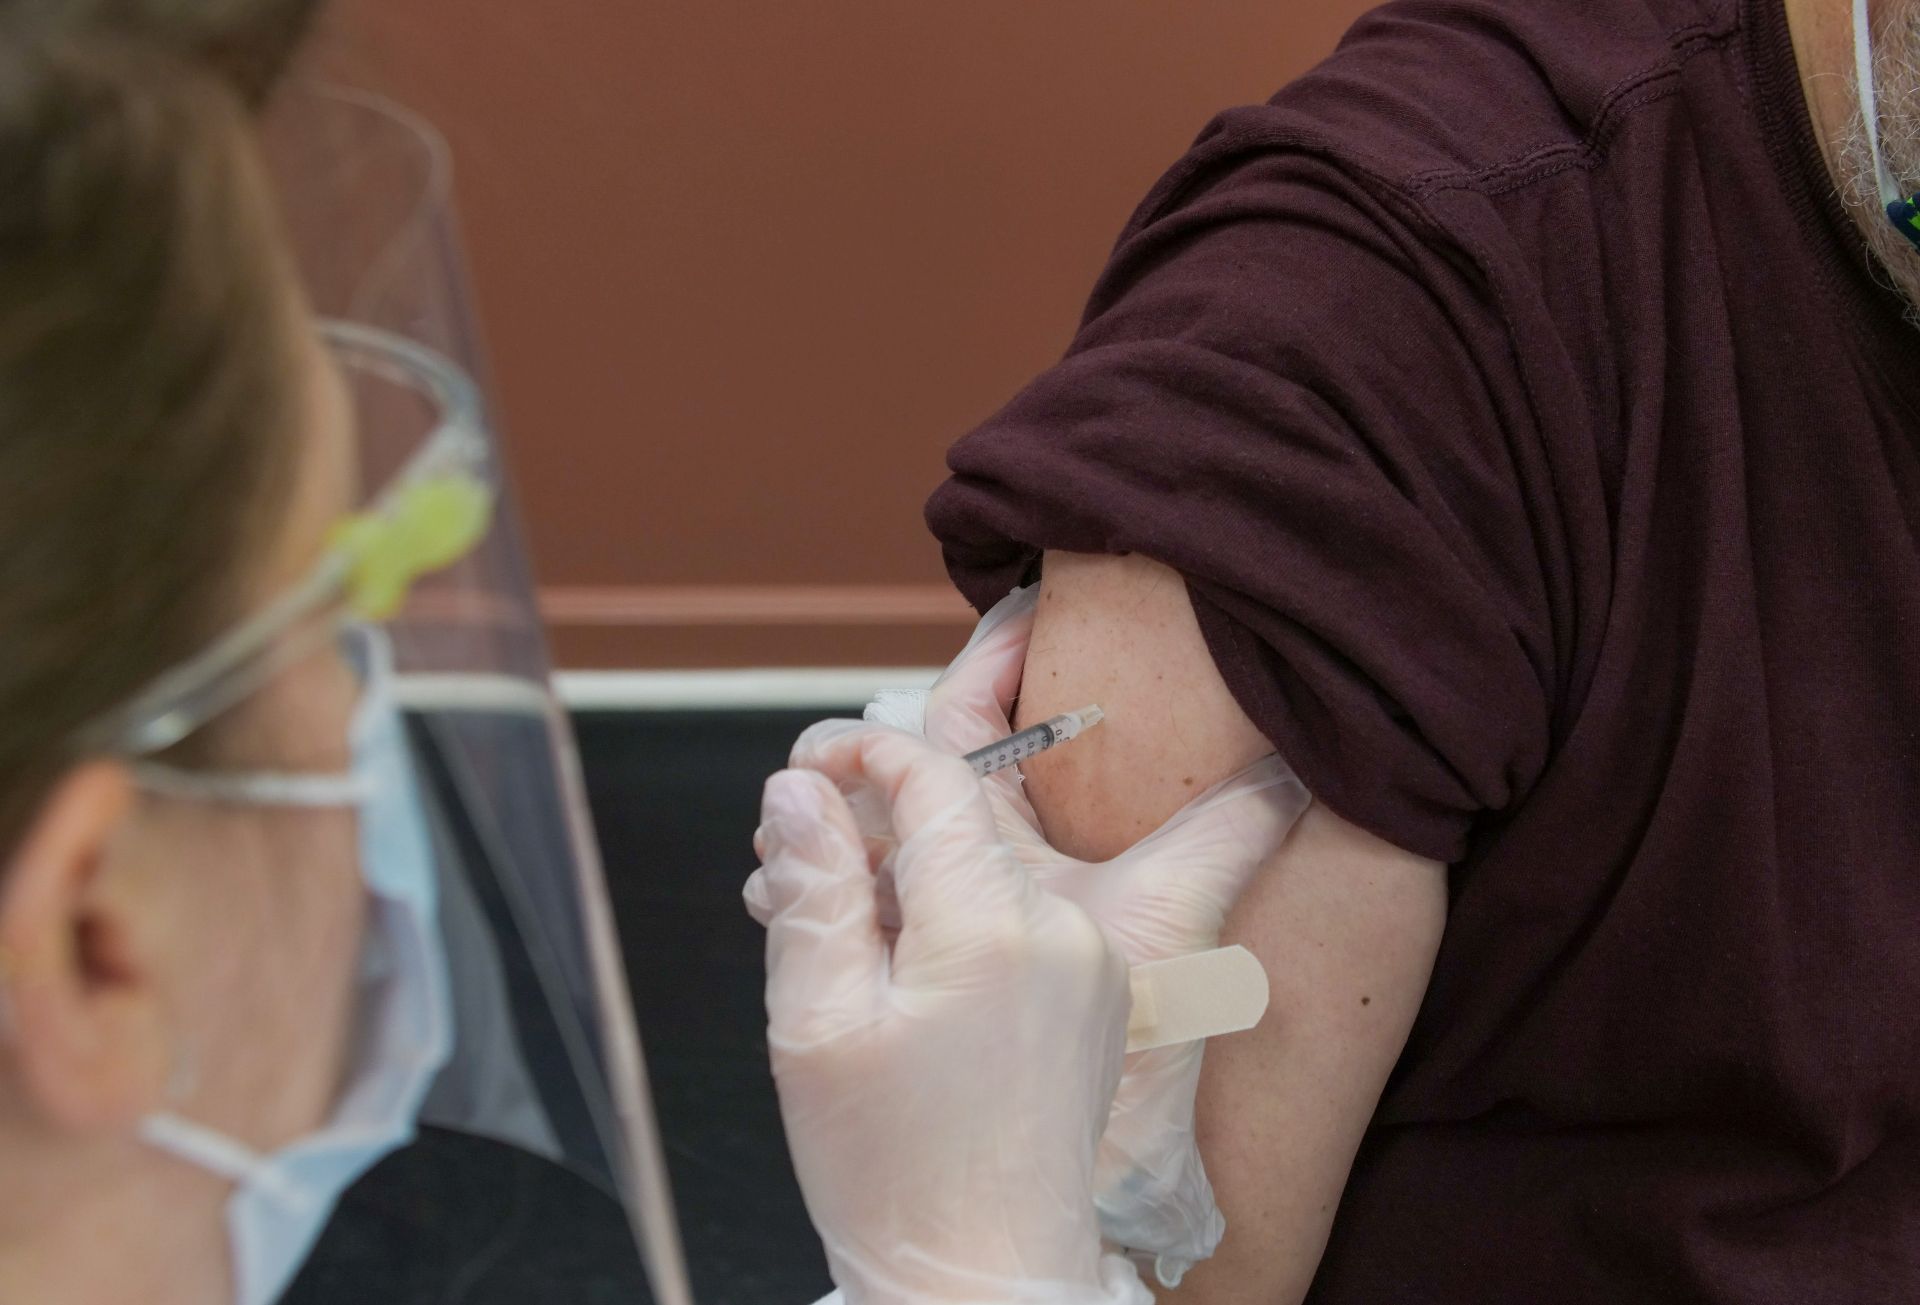 Peste 1 milion de români s-au vaccinat anti-COVID la medicul de familie